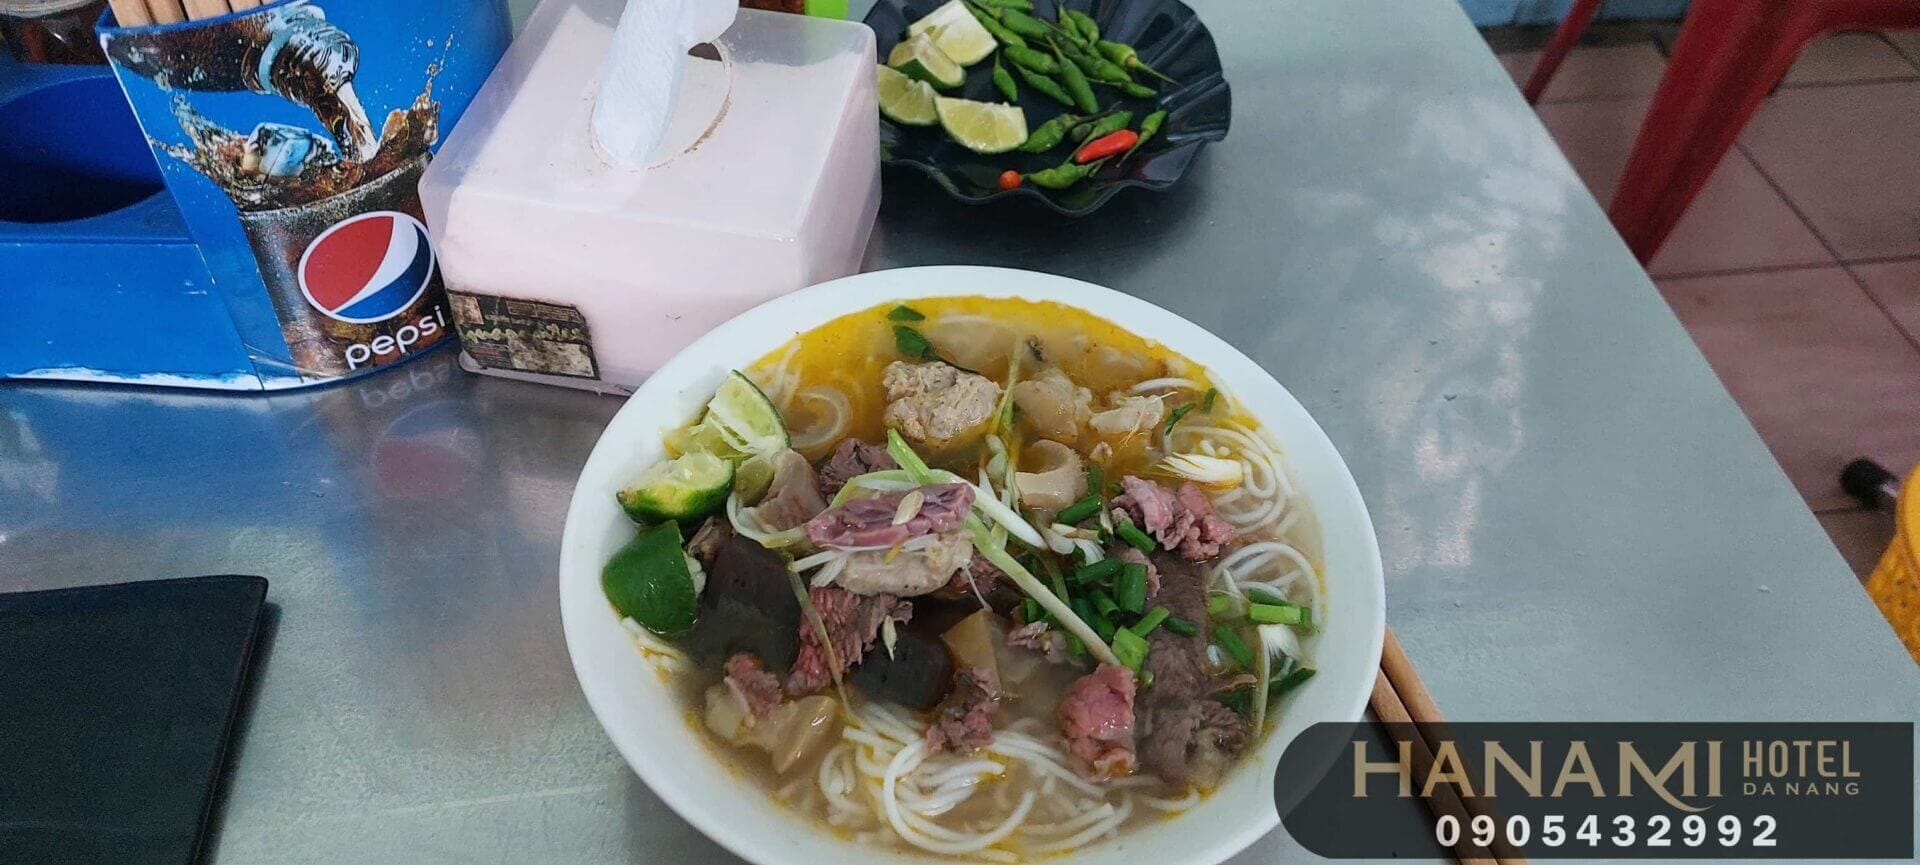 delicious eateries in Hai Chau district of Da Nang